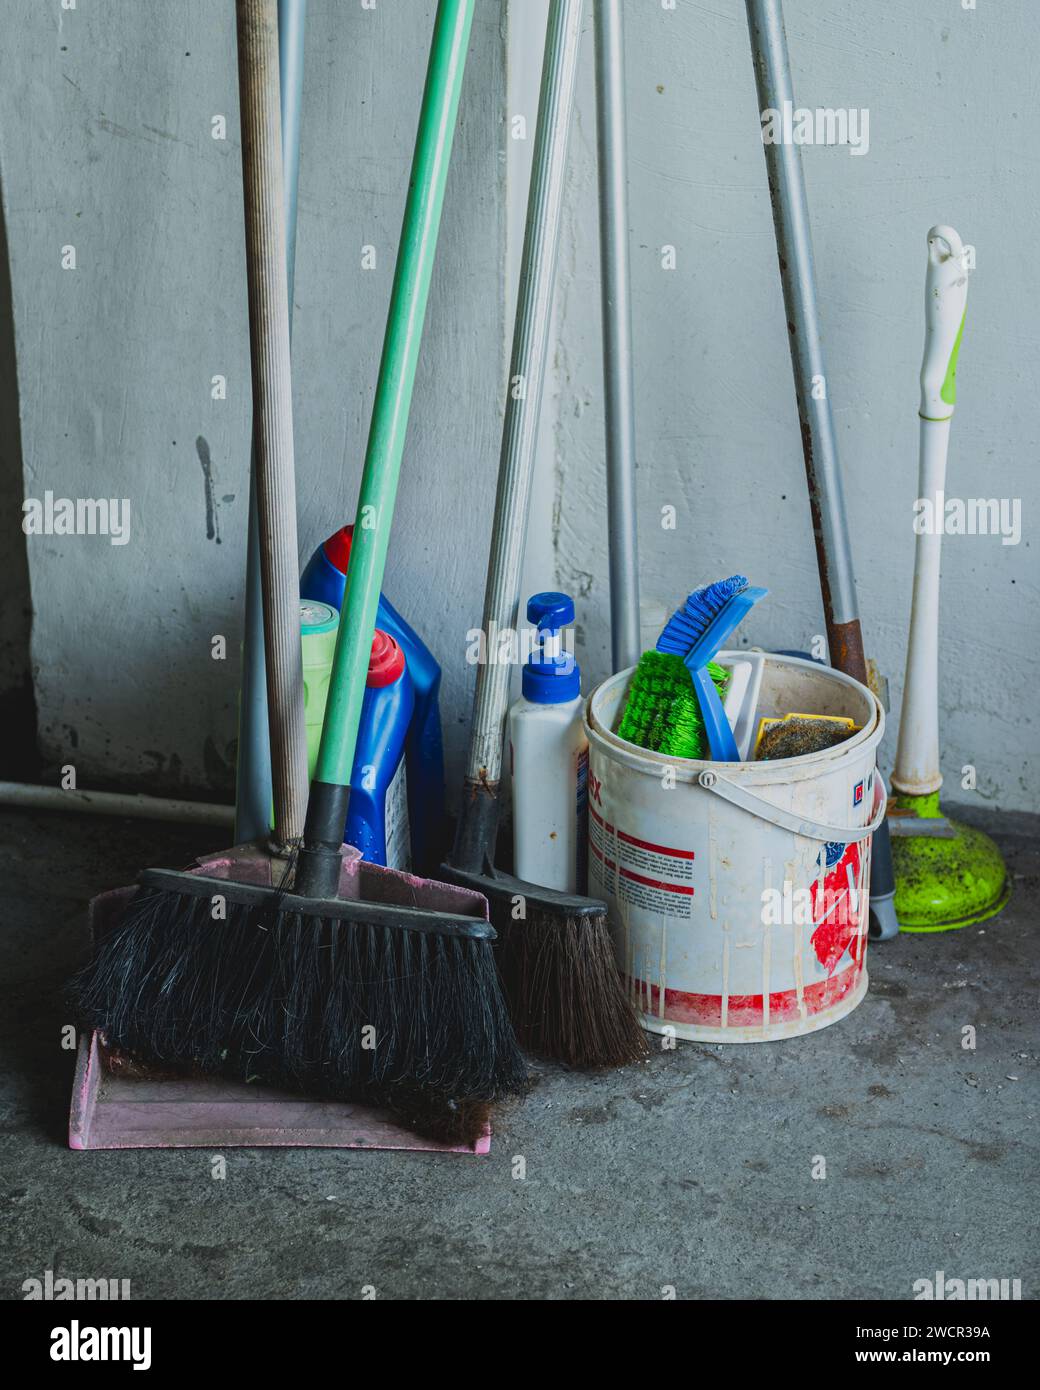 un grupo de herramientas de limpieza tradicionales para el hogar Foto de stock